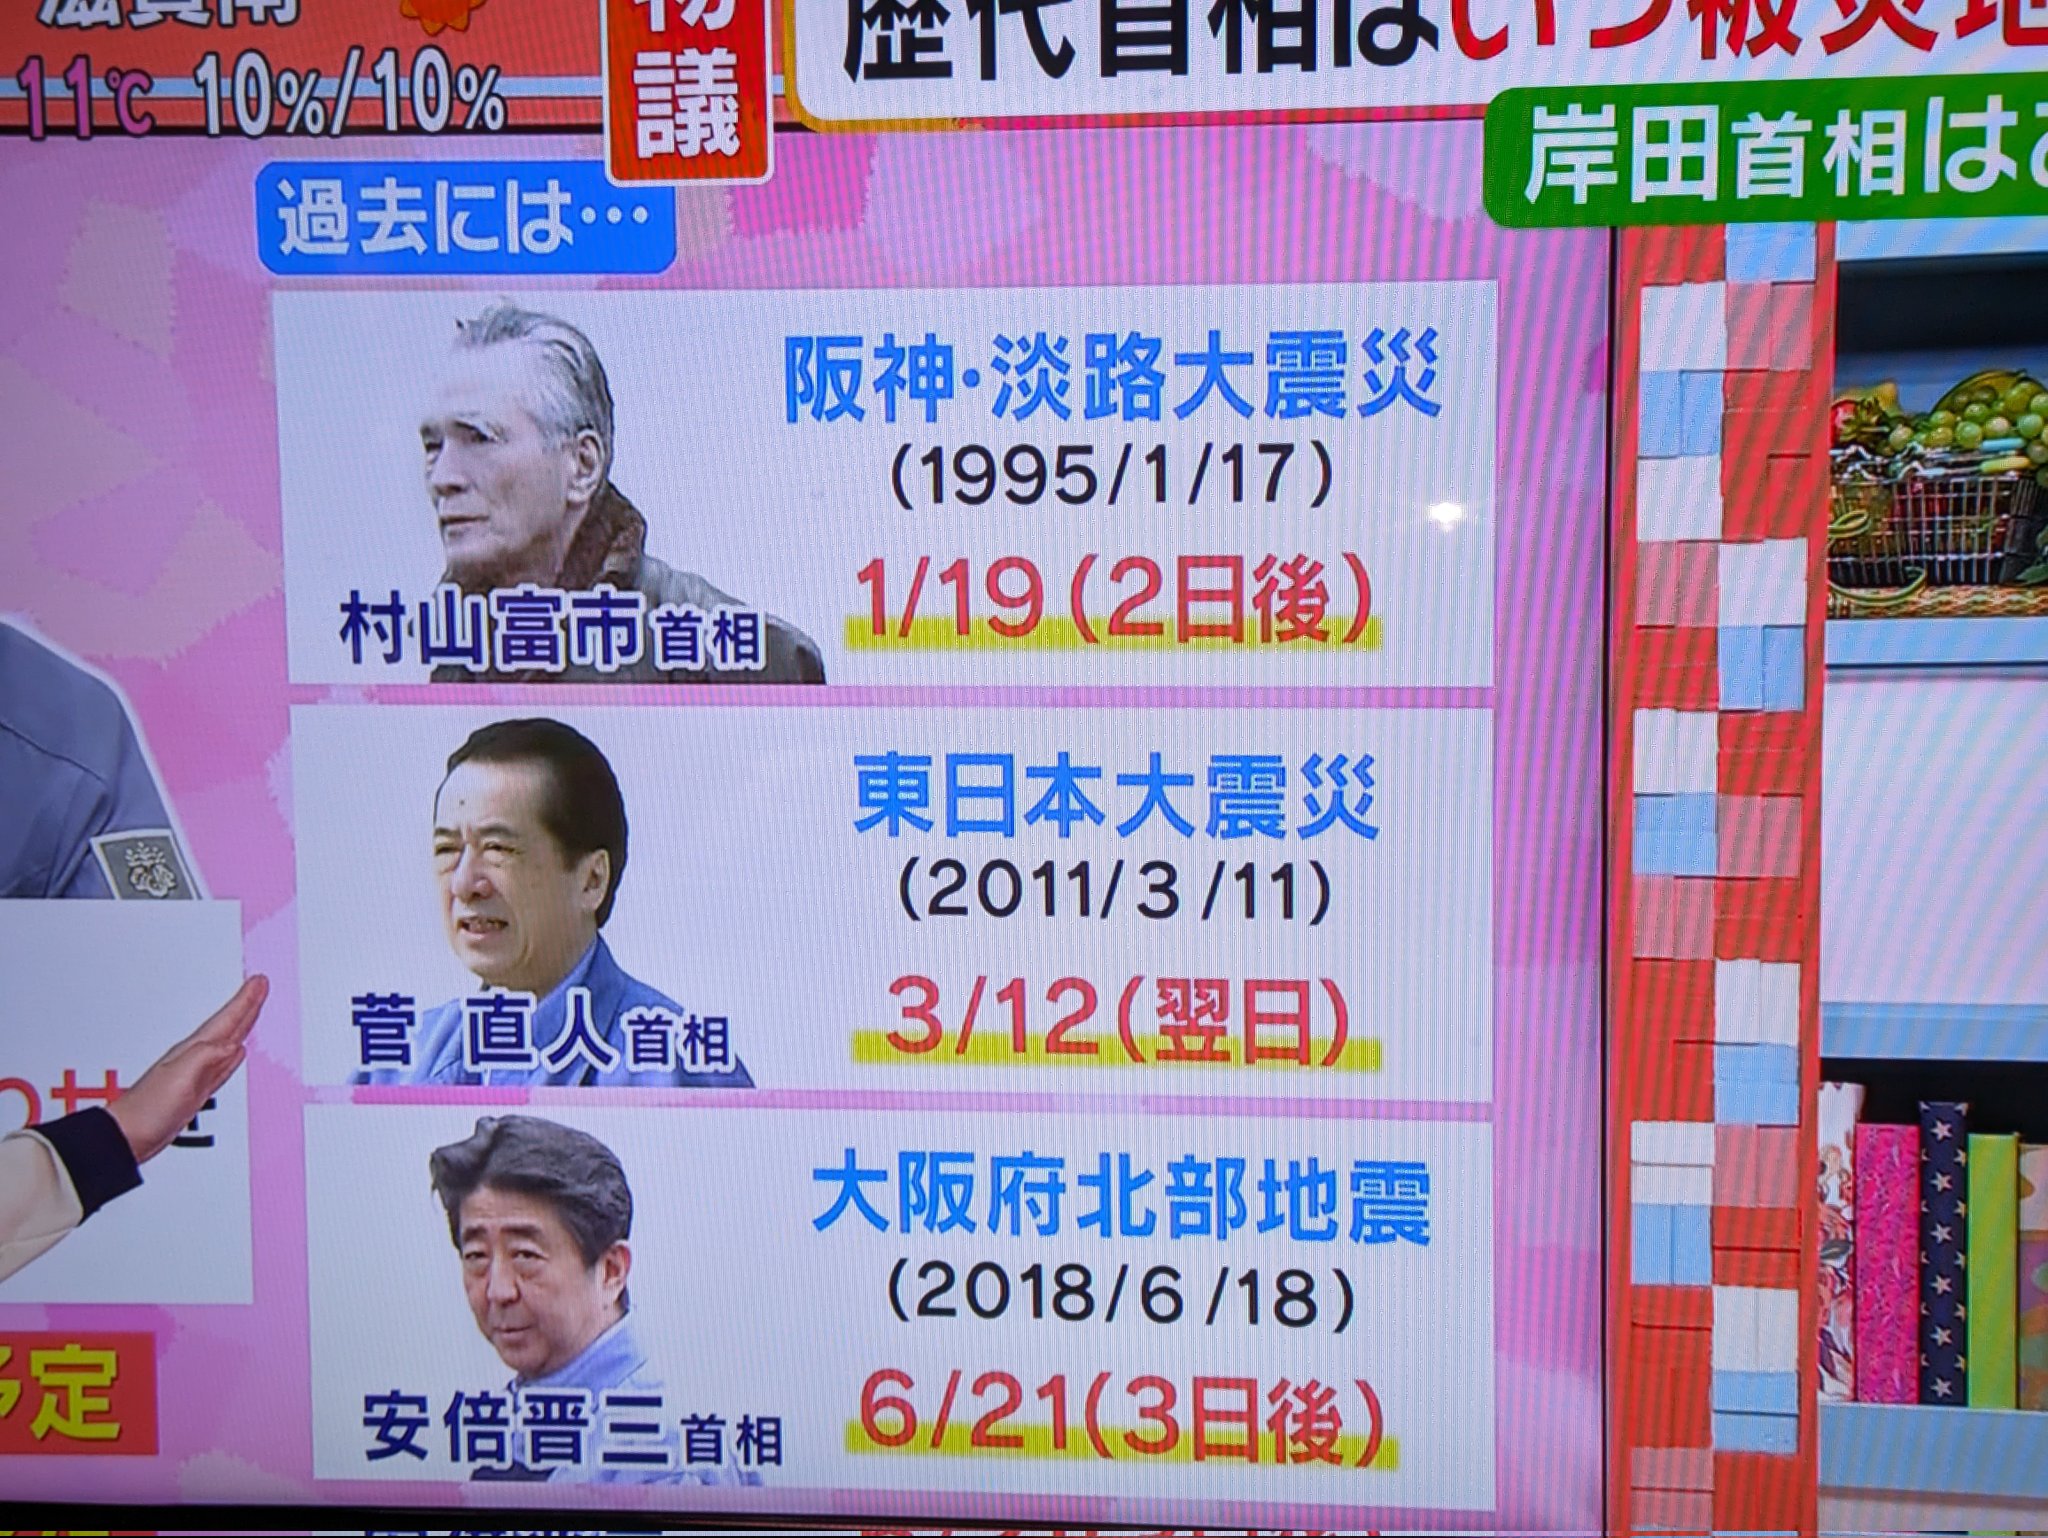 【岸田悲報】震災後、歴代総理がいつ現地入りしたかの比較がテレビで流れてしまう🤓キシオ…😨  [359965264]\n_1